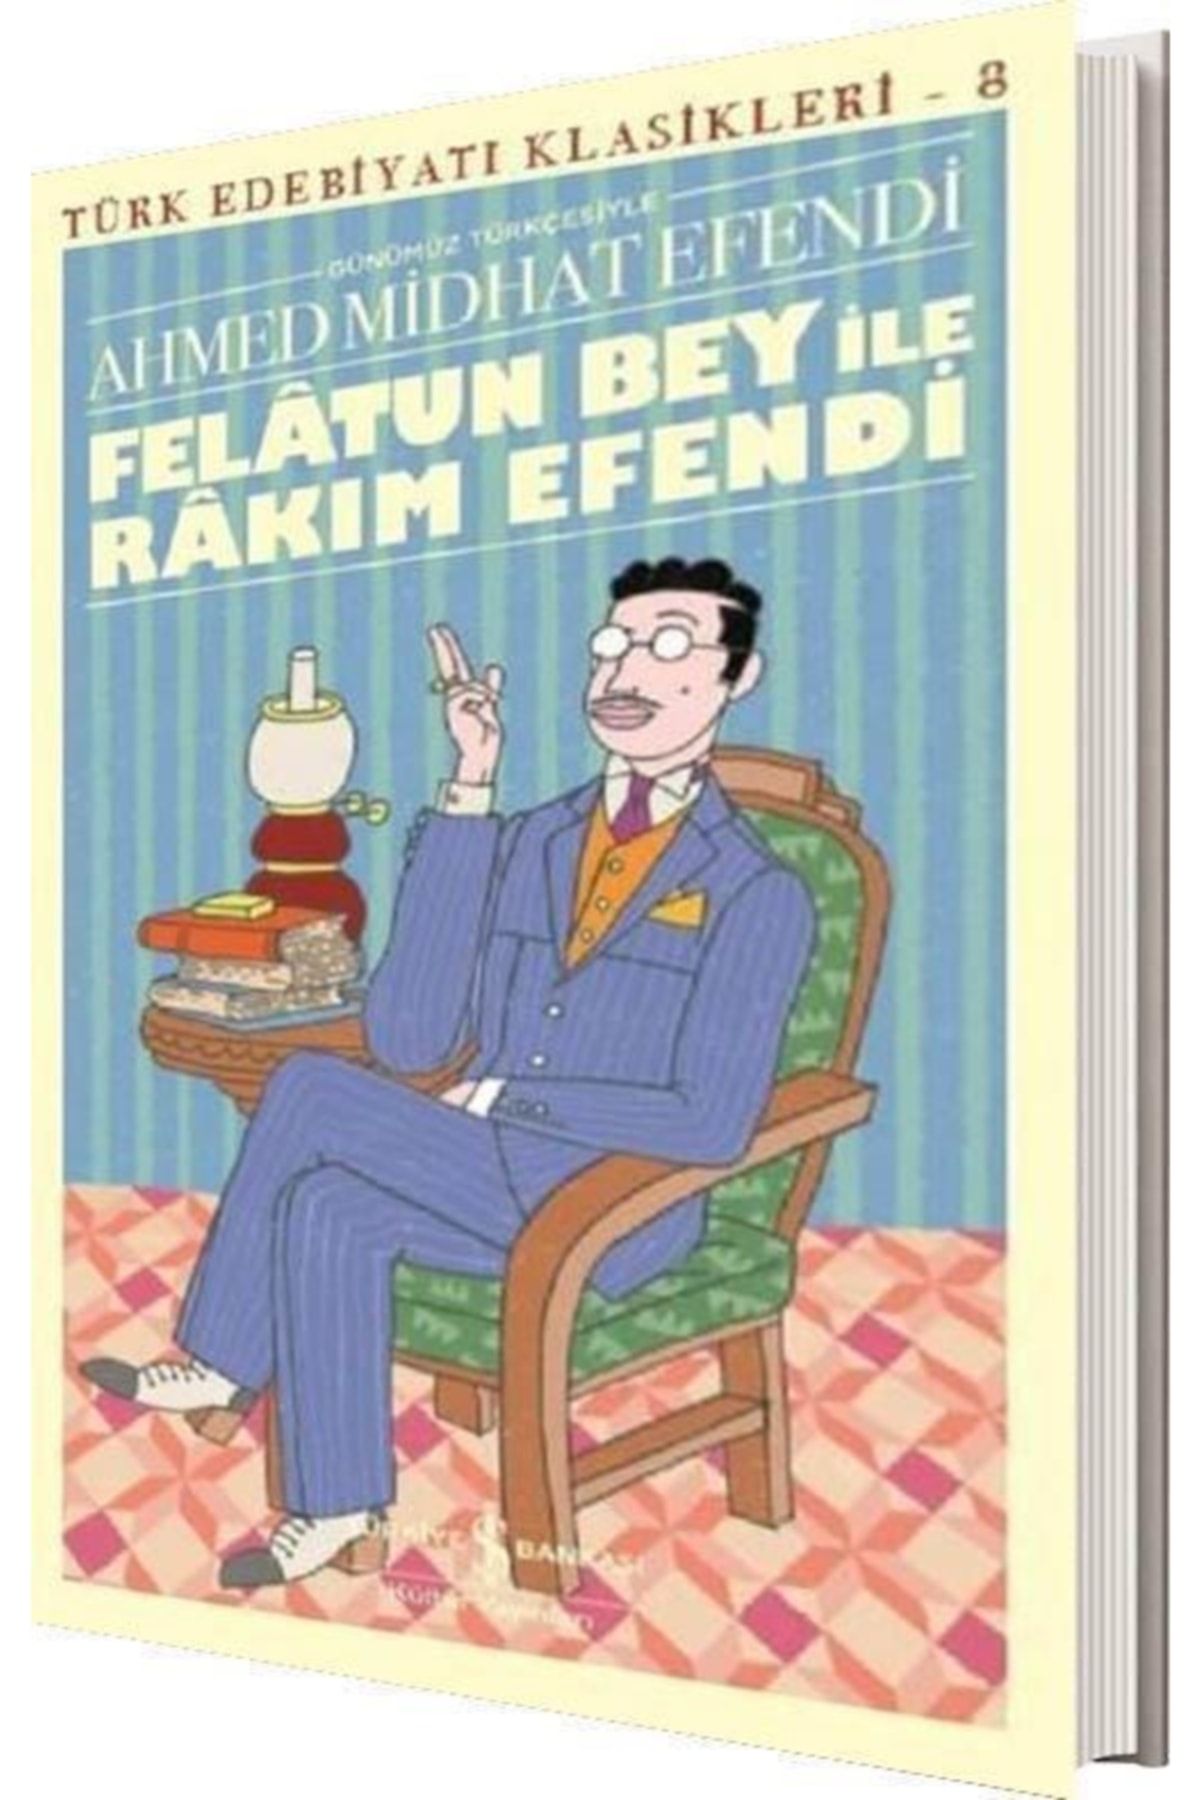 Türkiye İş Bankası Kültür Yayınları Felatun Bey Ile Rakım Efendi Ahmed Midhat Iş Bankası Kültür Yay.